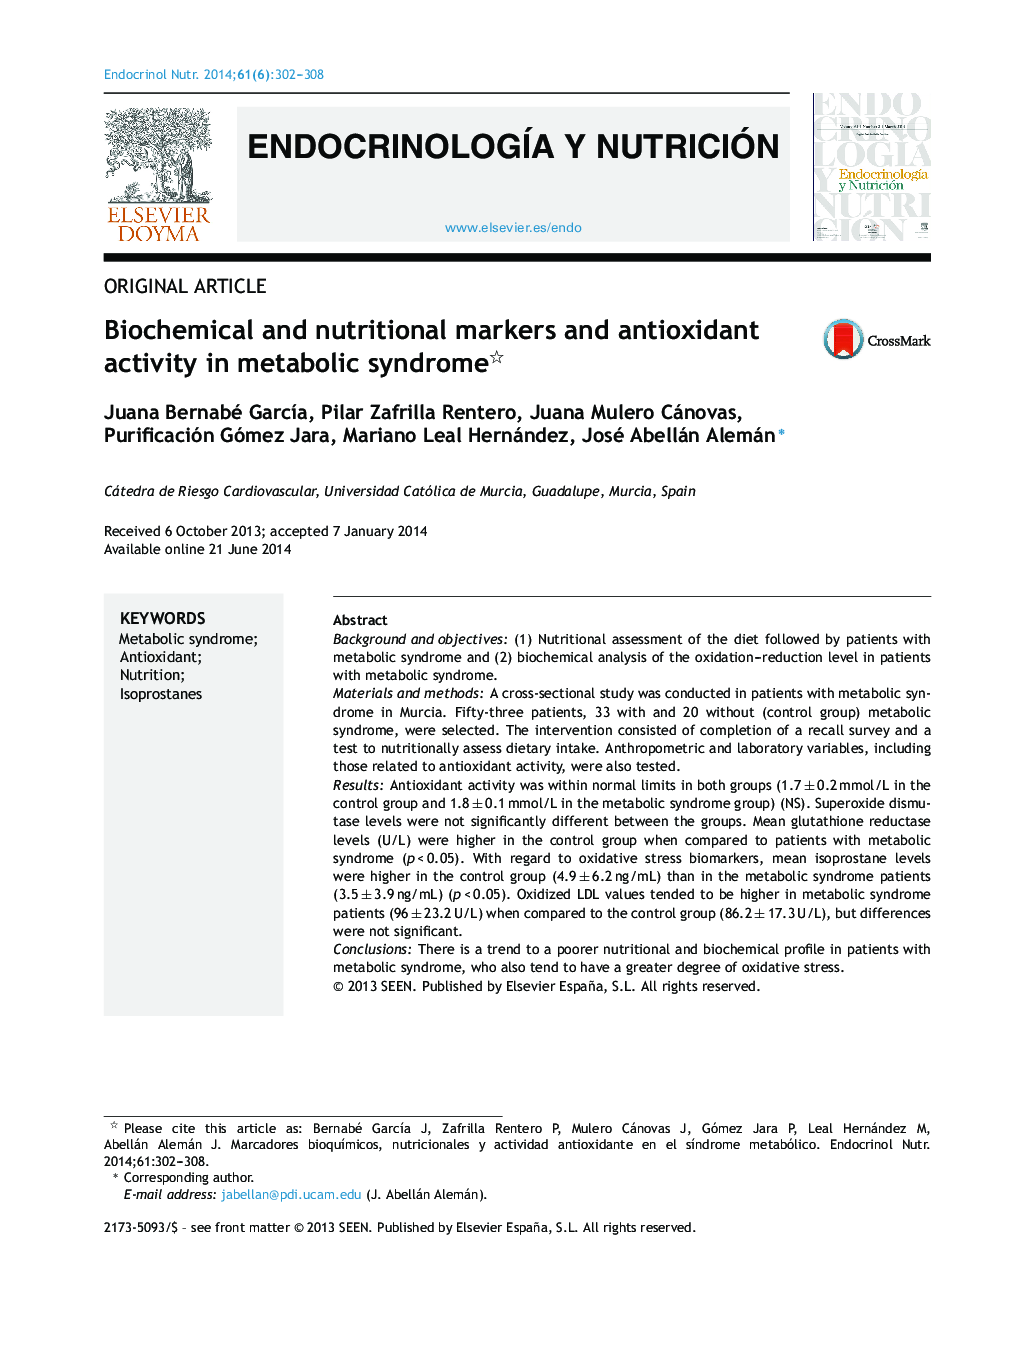 نشانگرهای بیوشیمیایی و تغذیه و فعالیت آنتی اکسیدانی در سندرم متابولیک 